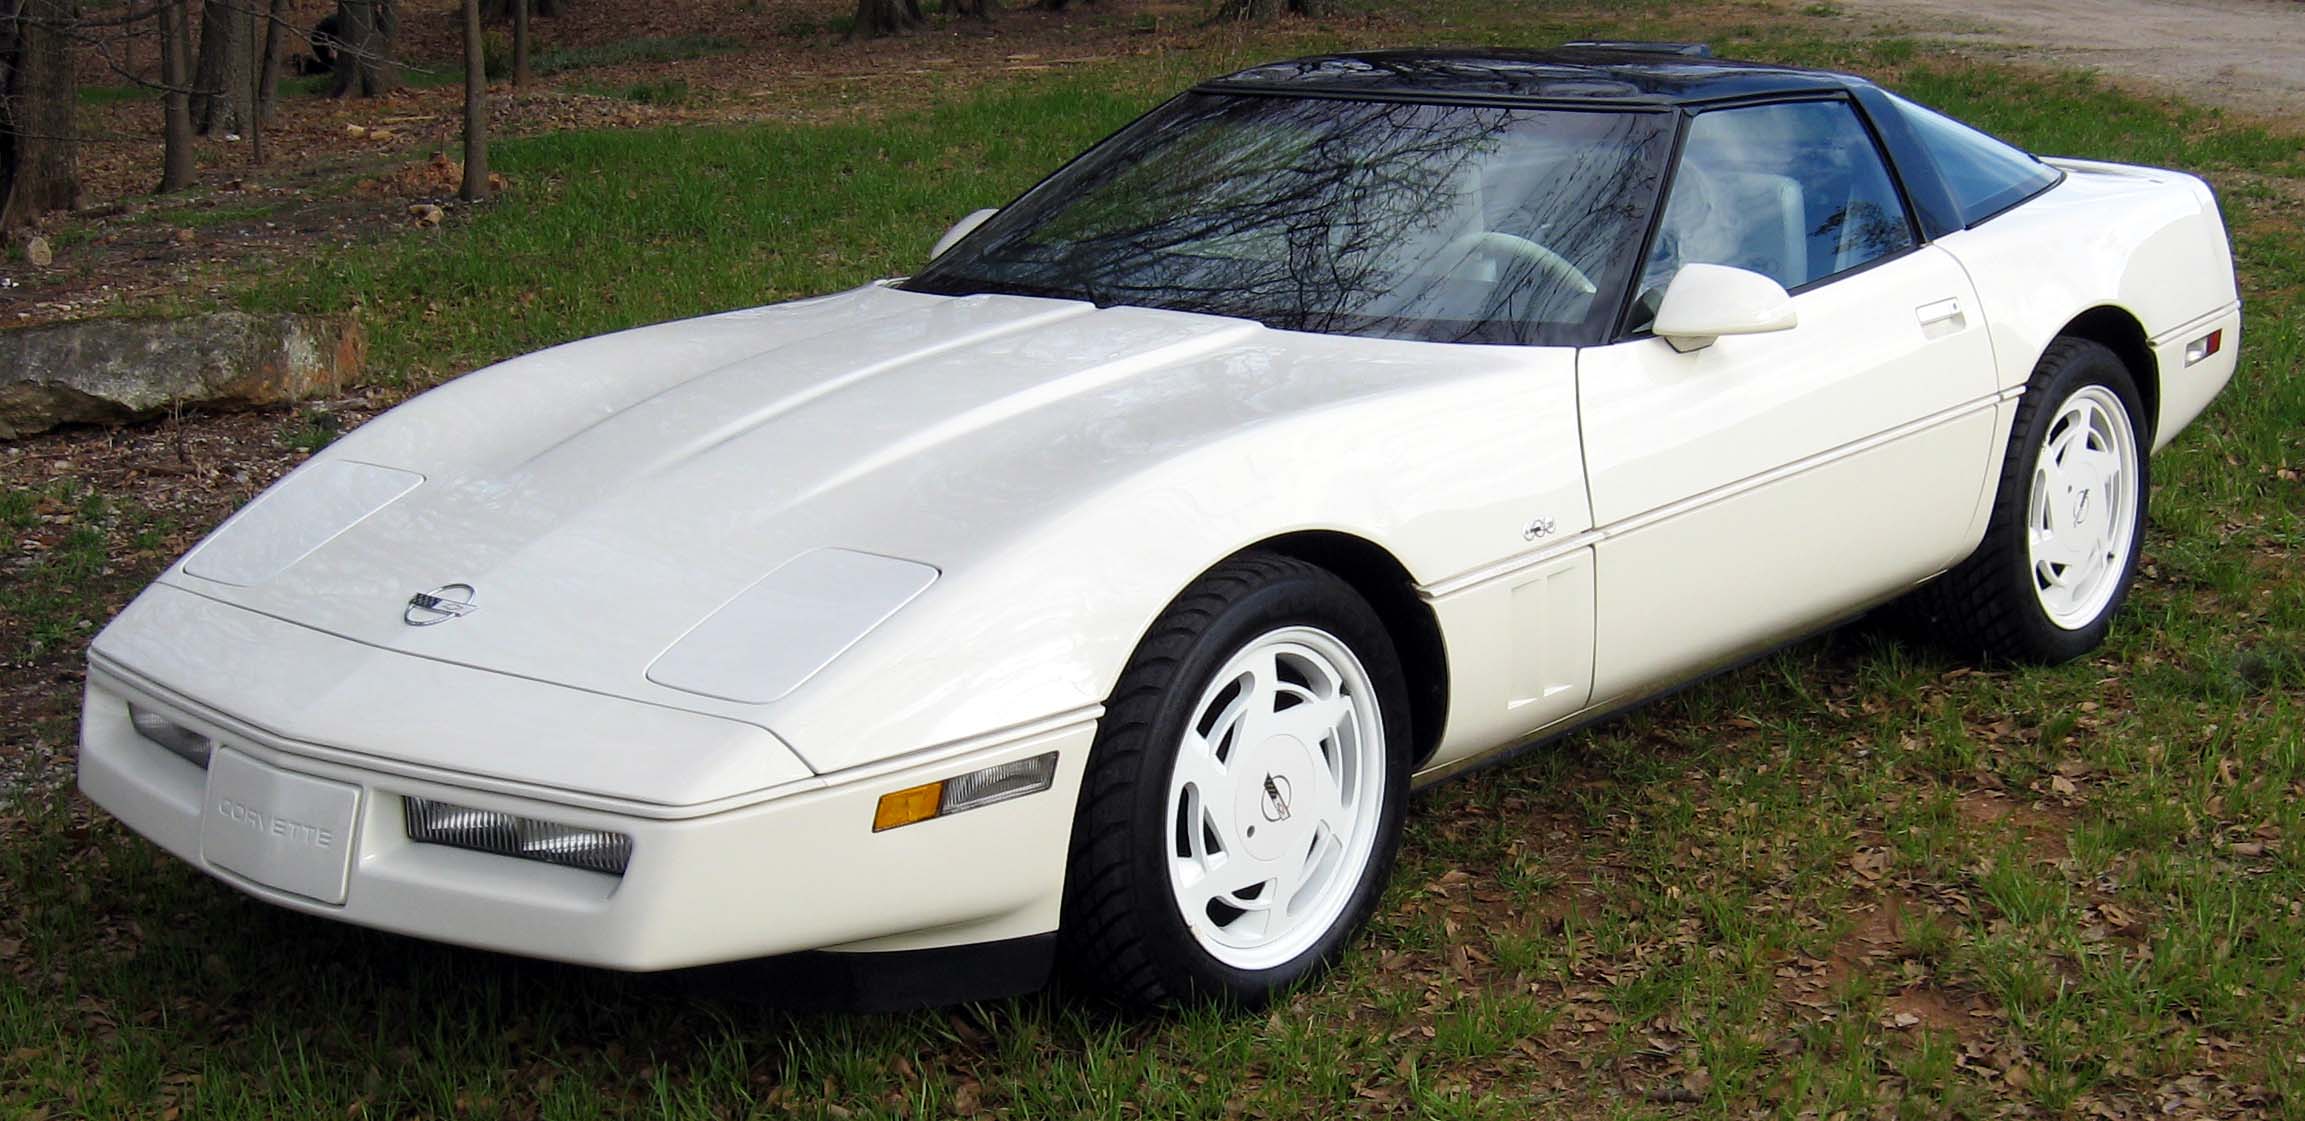 The 1988 35th Anniversary Edition Corvette